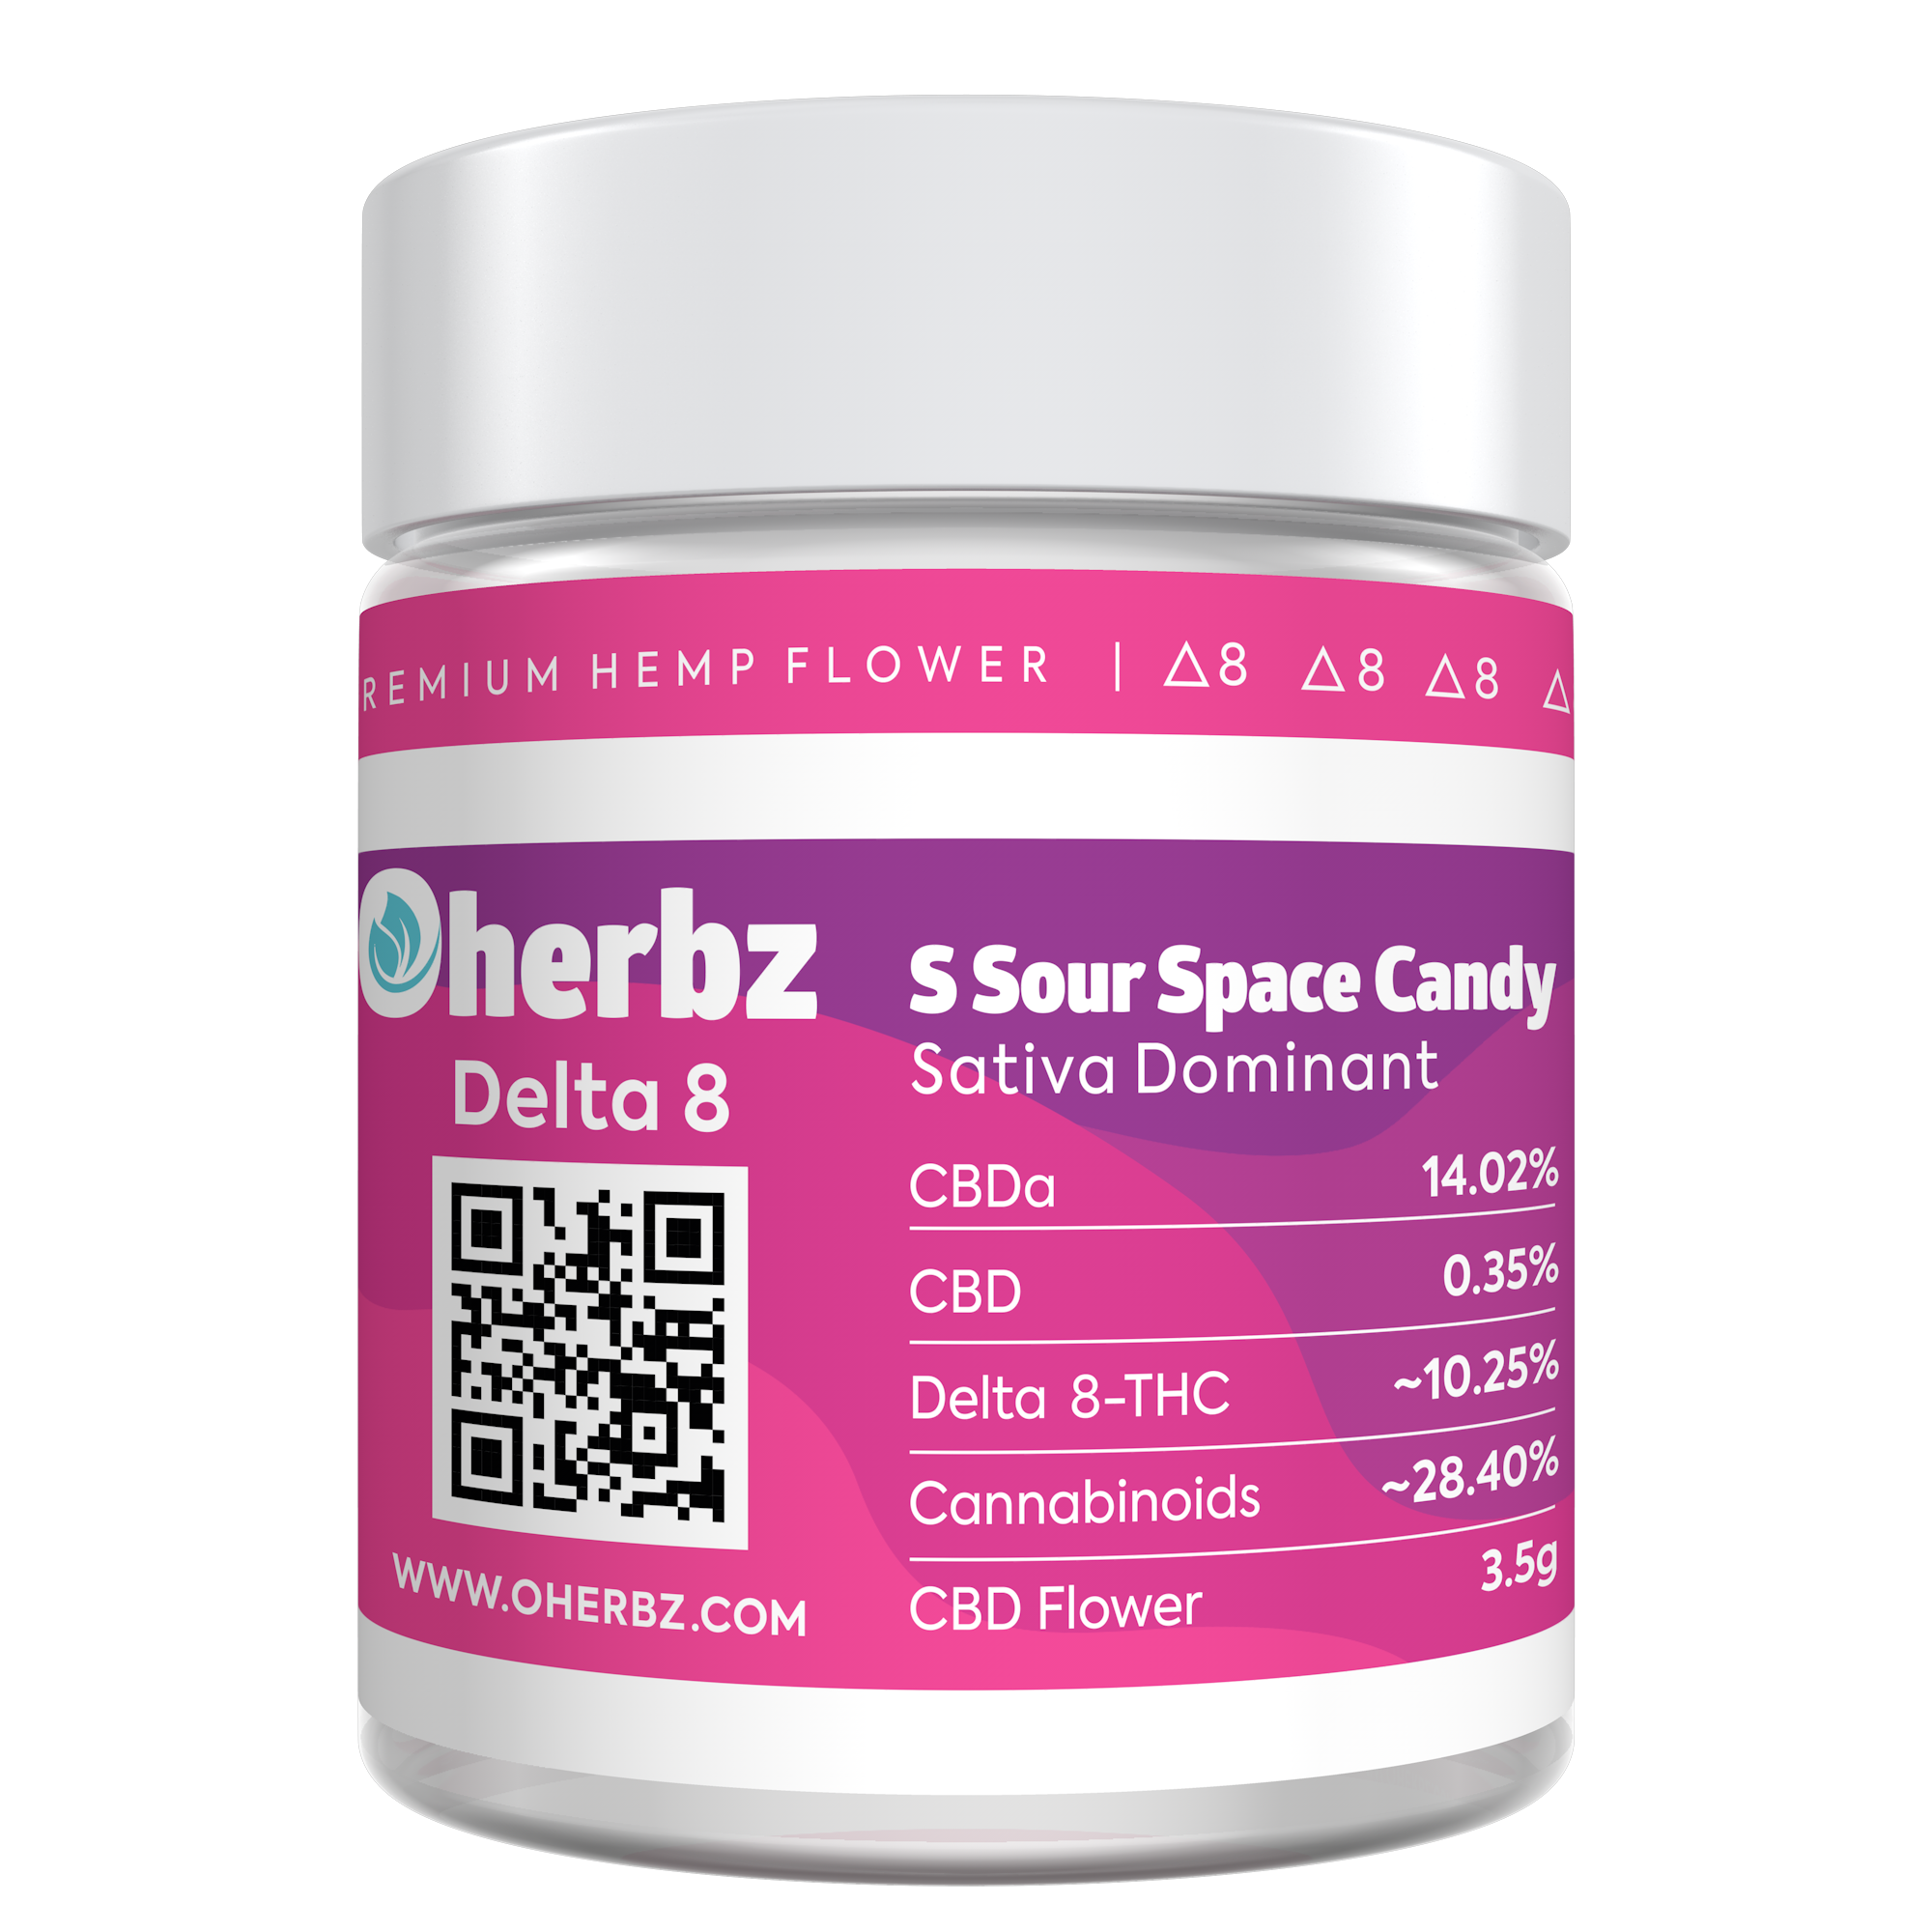 Oherbz Delta 8 “Super Sour Space Candy” Premium Hemp Flower